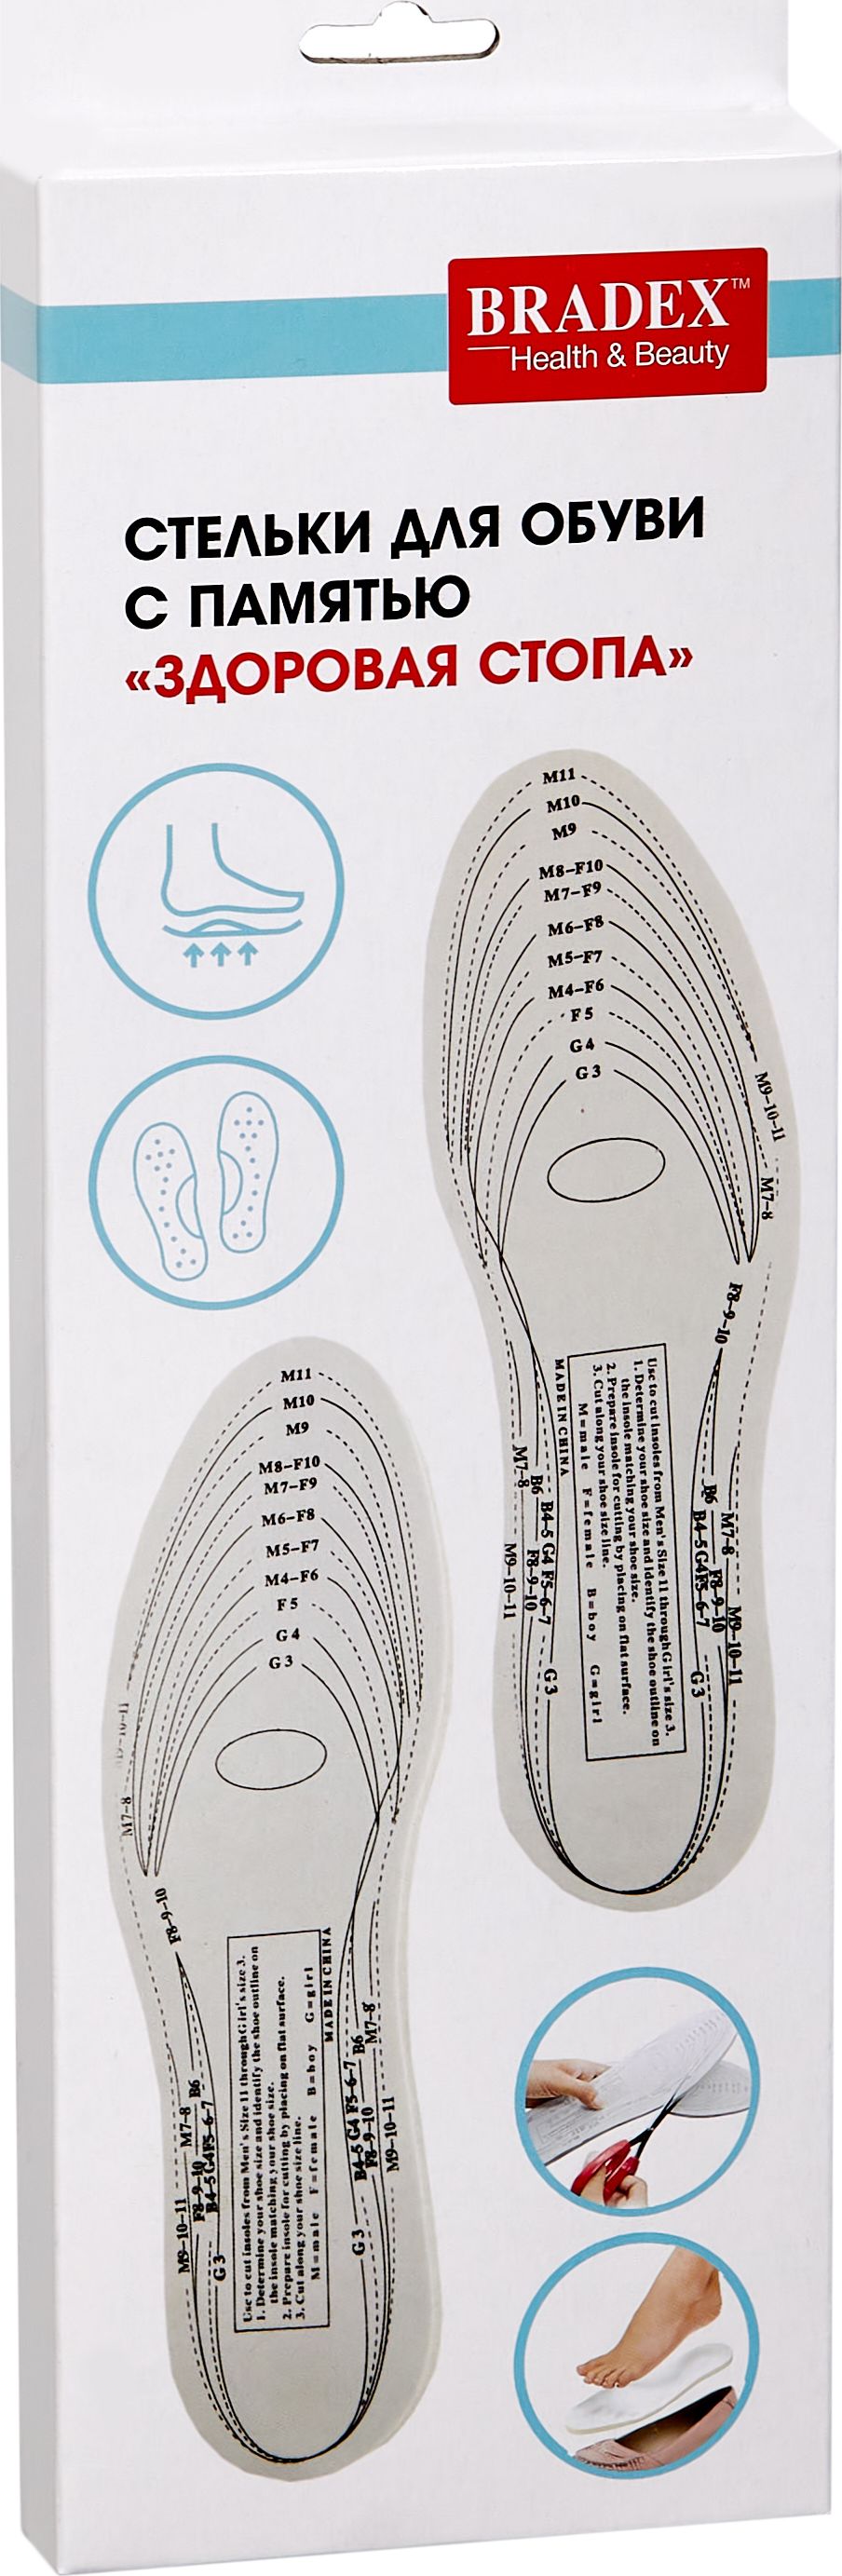 Стельки для обуви с памятью «ЗДОРОВАЯ СТОПА», BRADEX